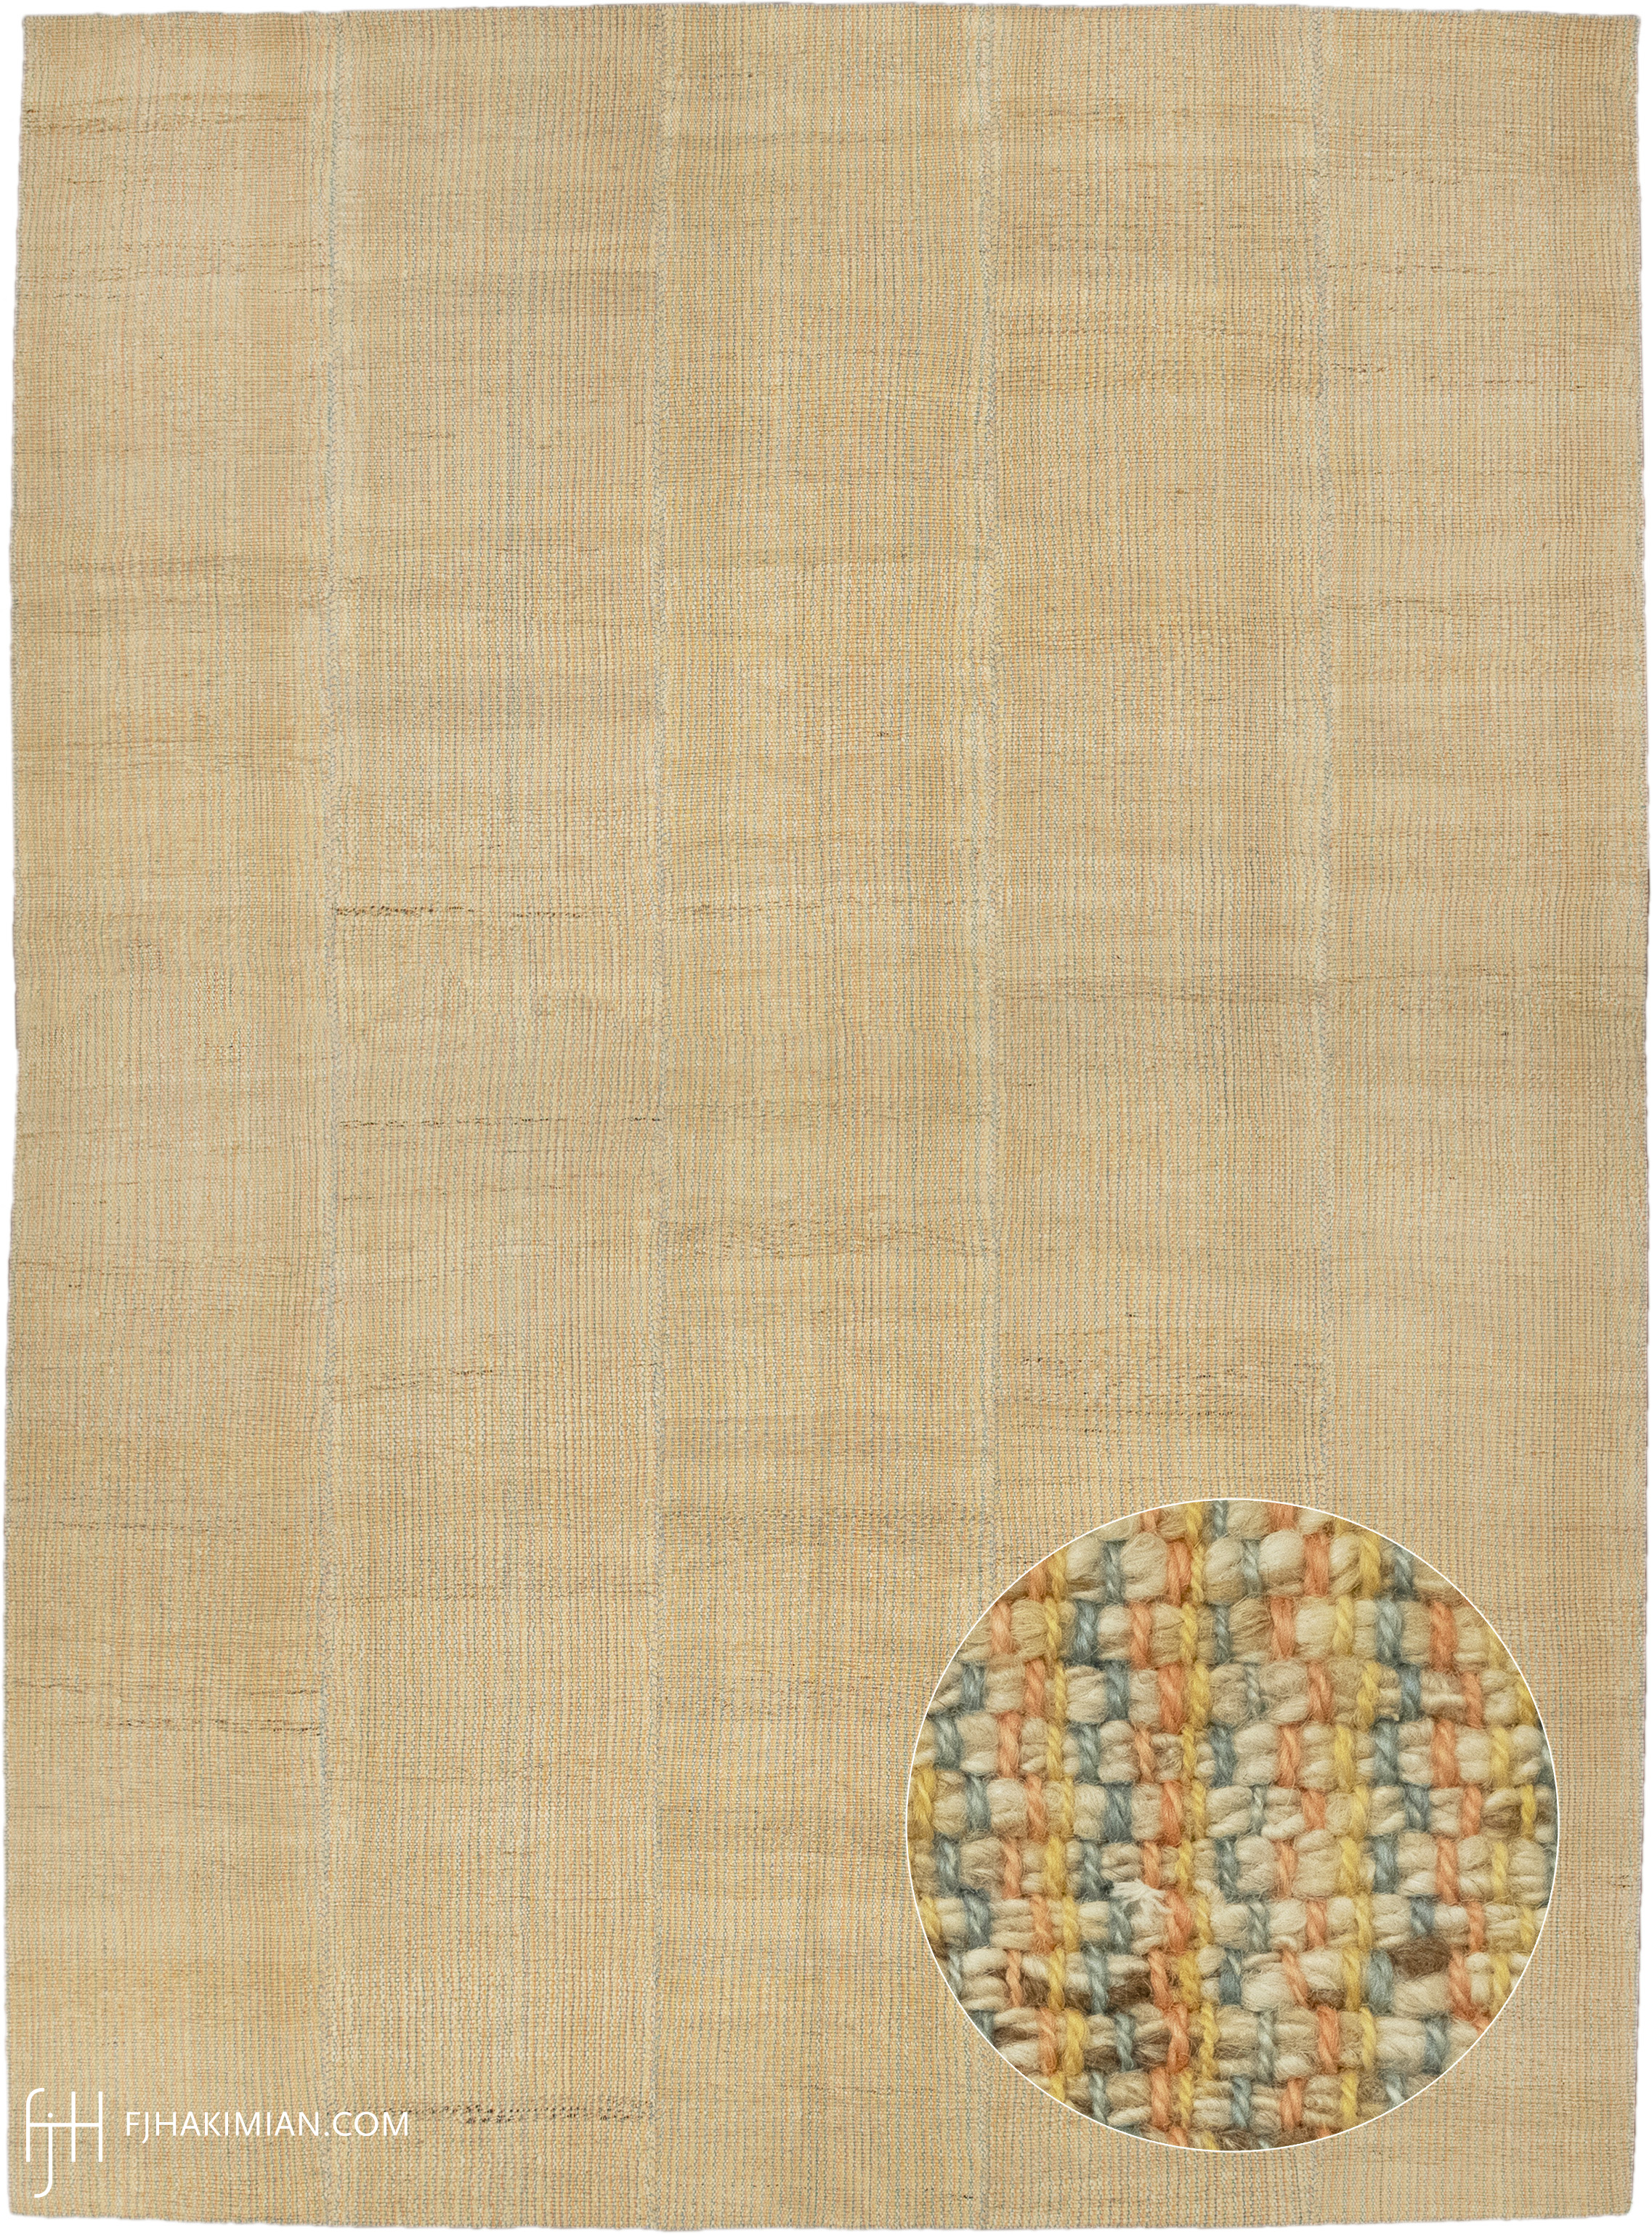 FJ Hakimian | 23369 | Vintage Carpet